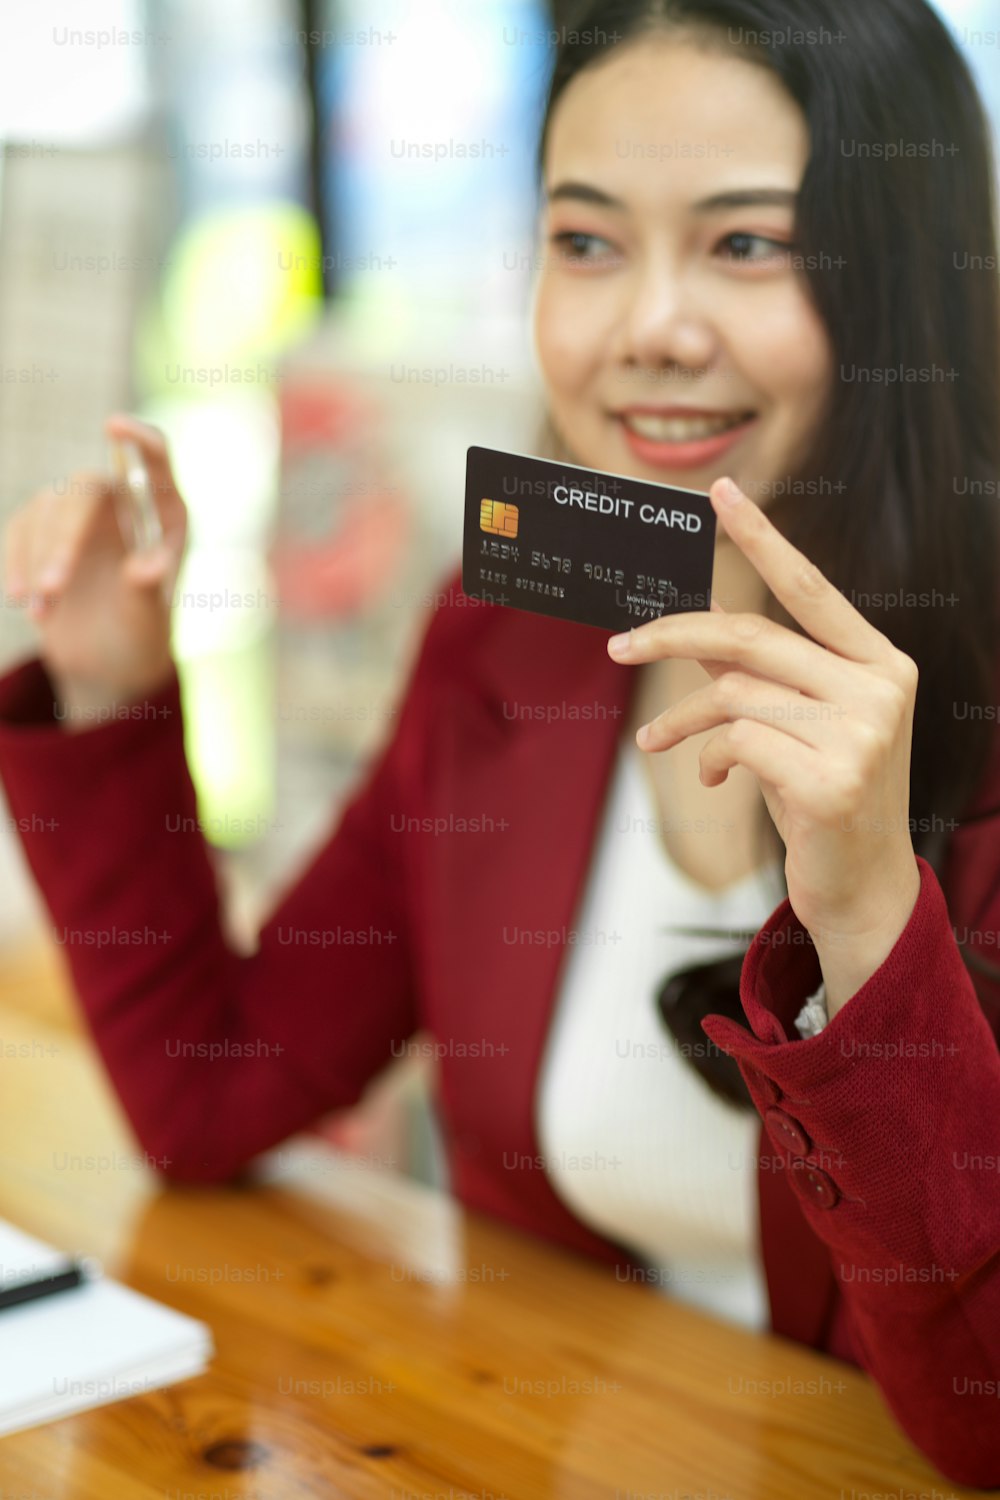 Retrato de mujer de negocios feliz con tarjeta de crédito y token de bitcoin, enfoque los objetos y fondo borroso.